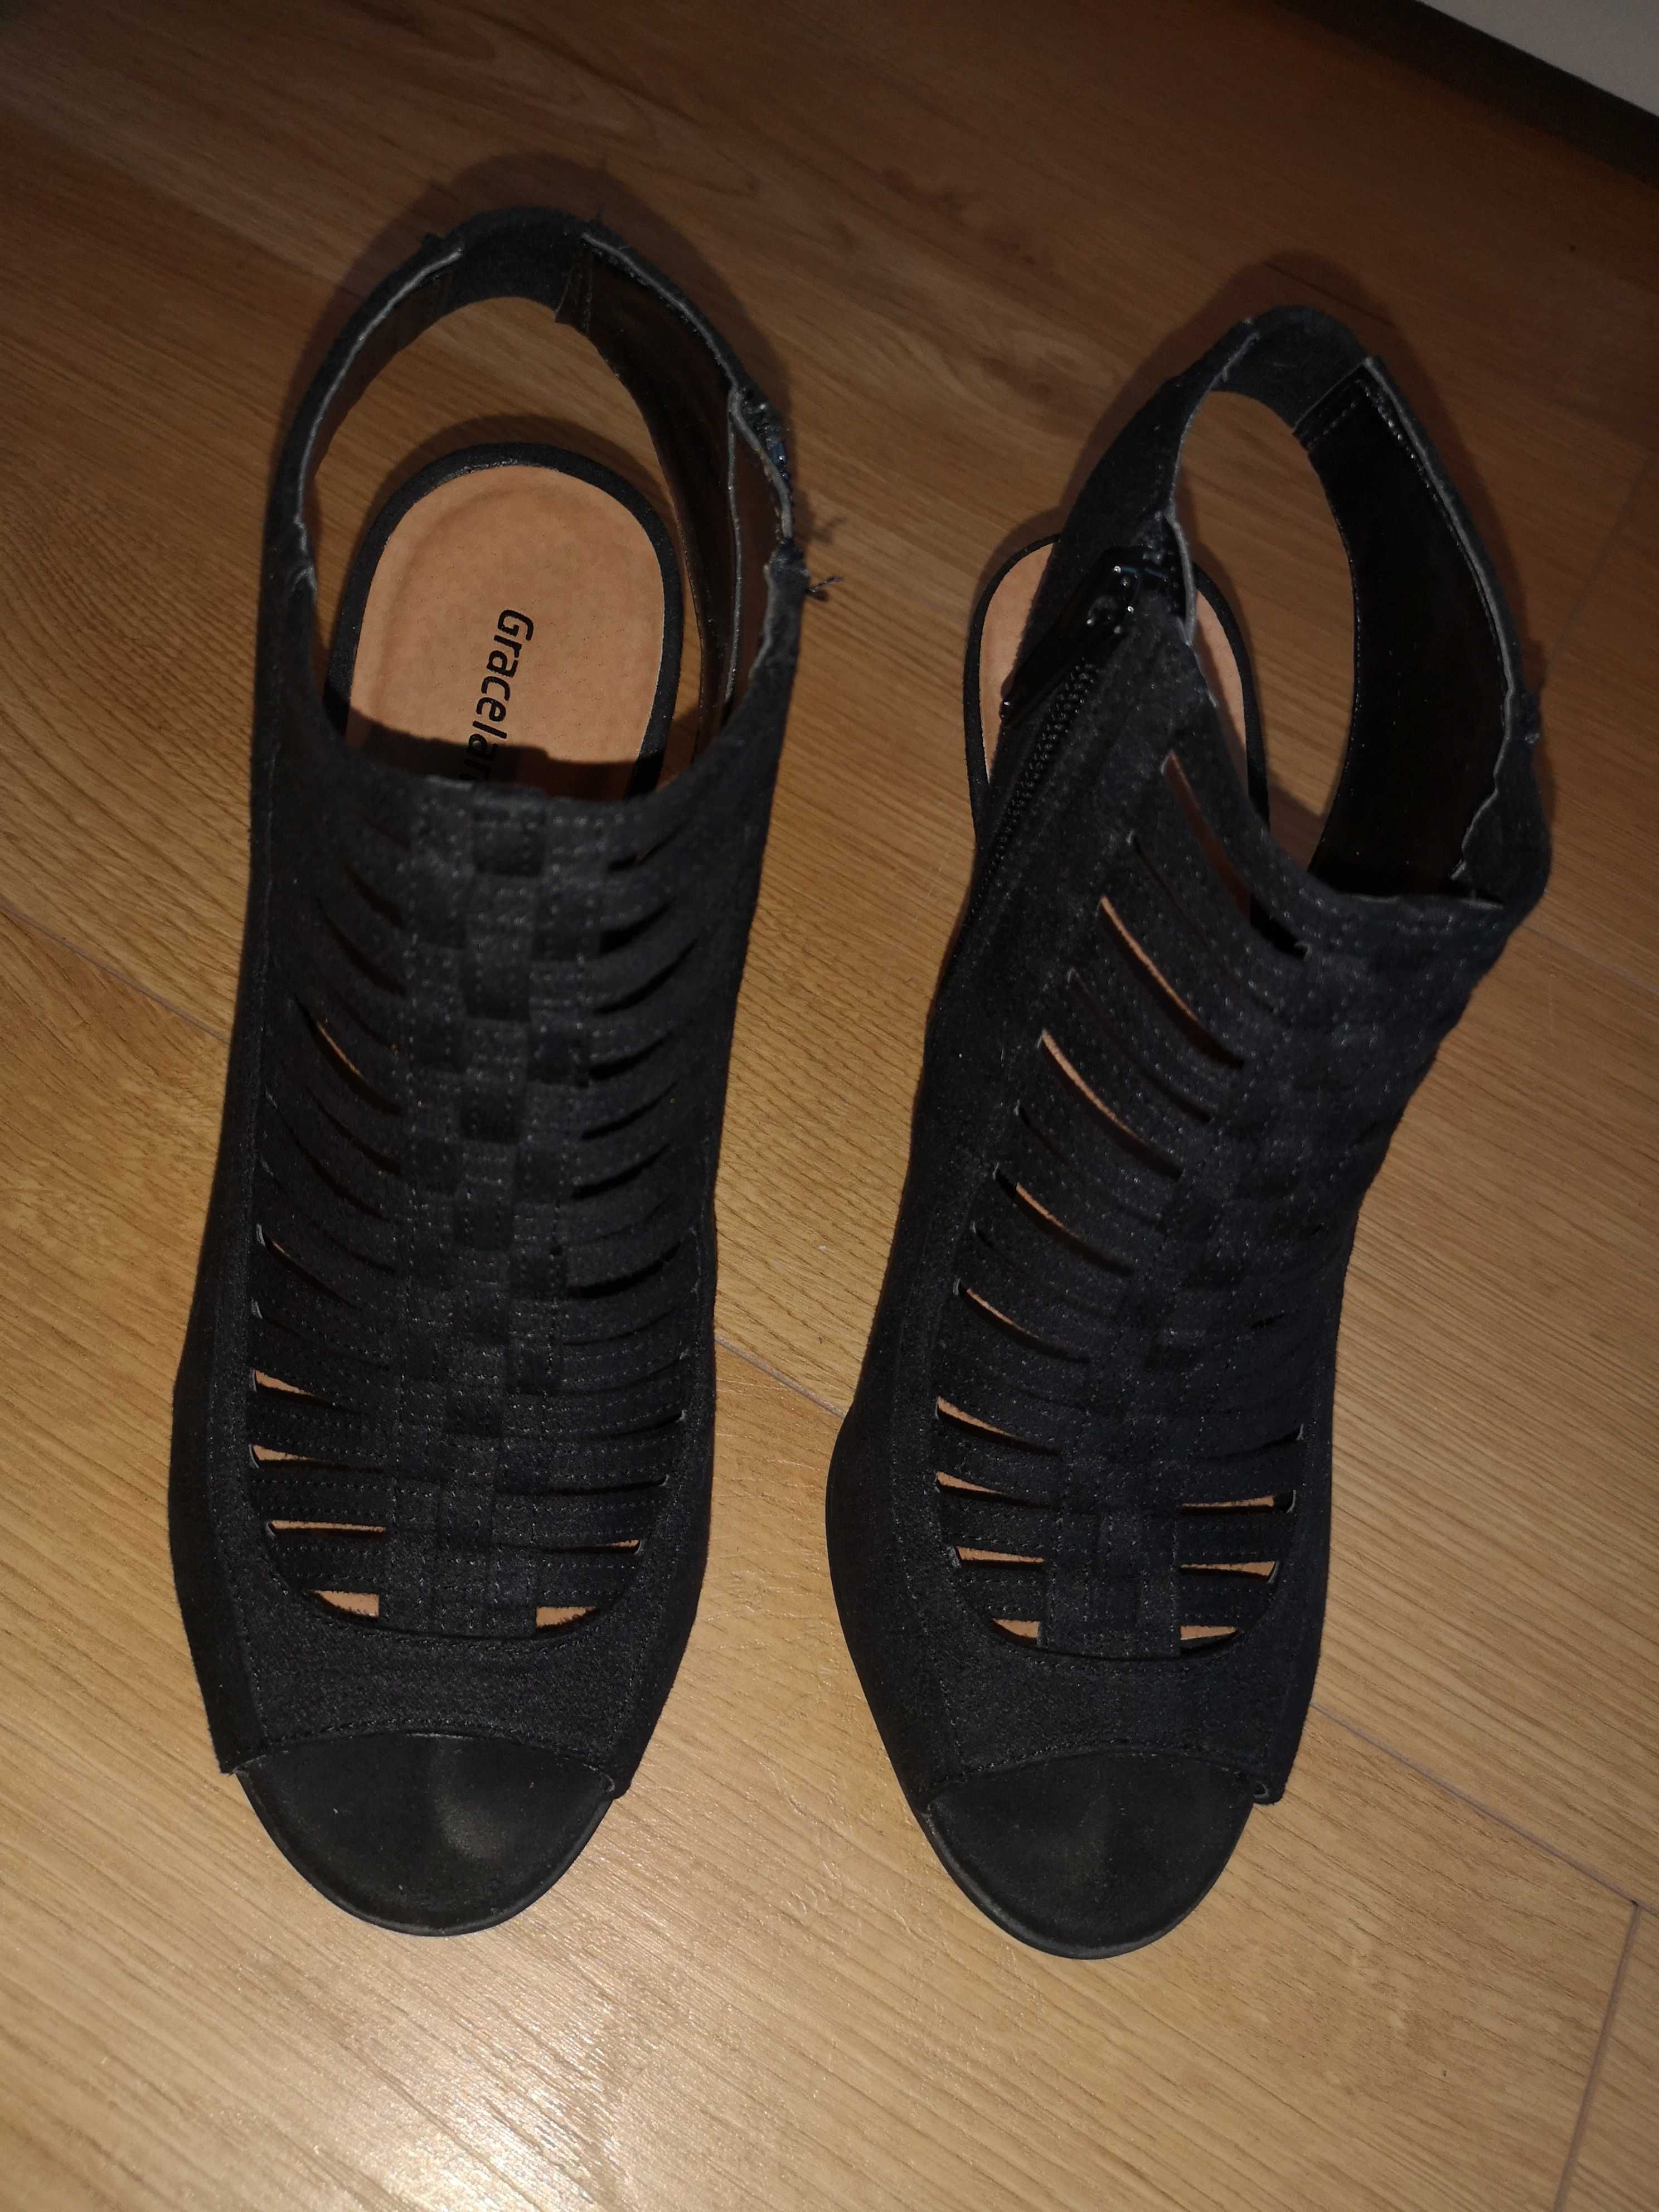 Buty szpilki sandały na obcasie czarne r 37